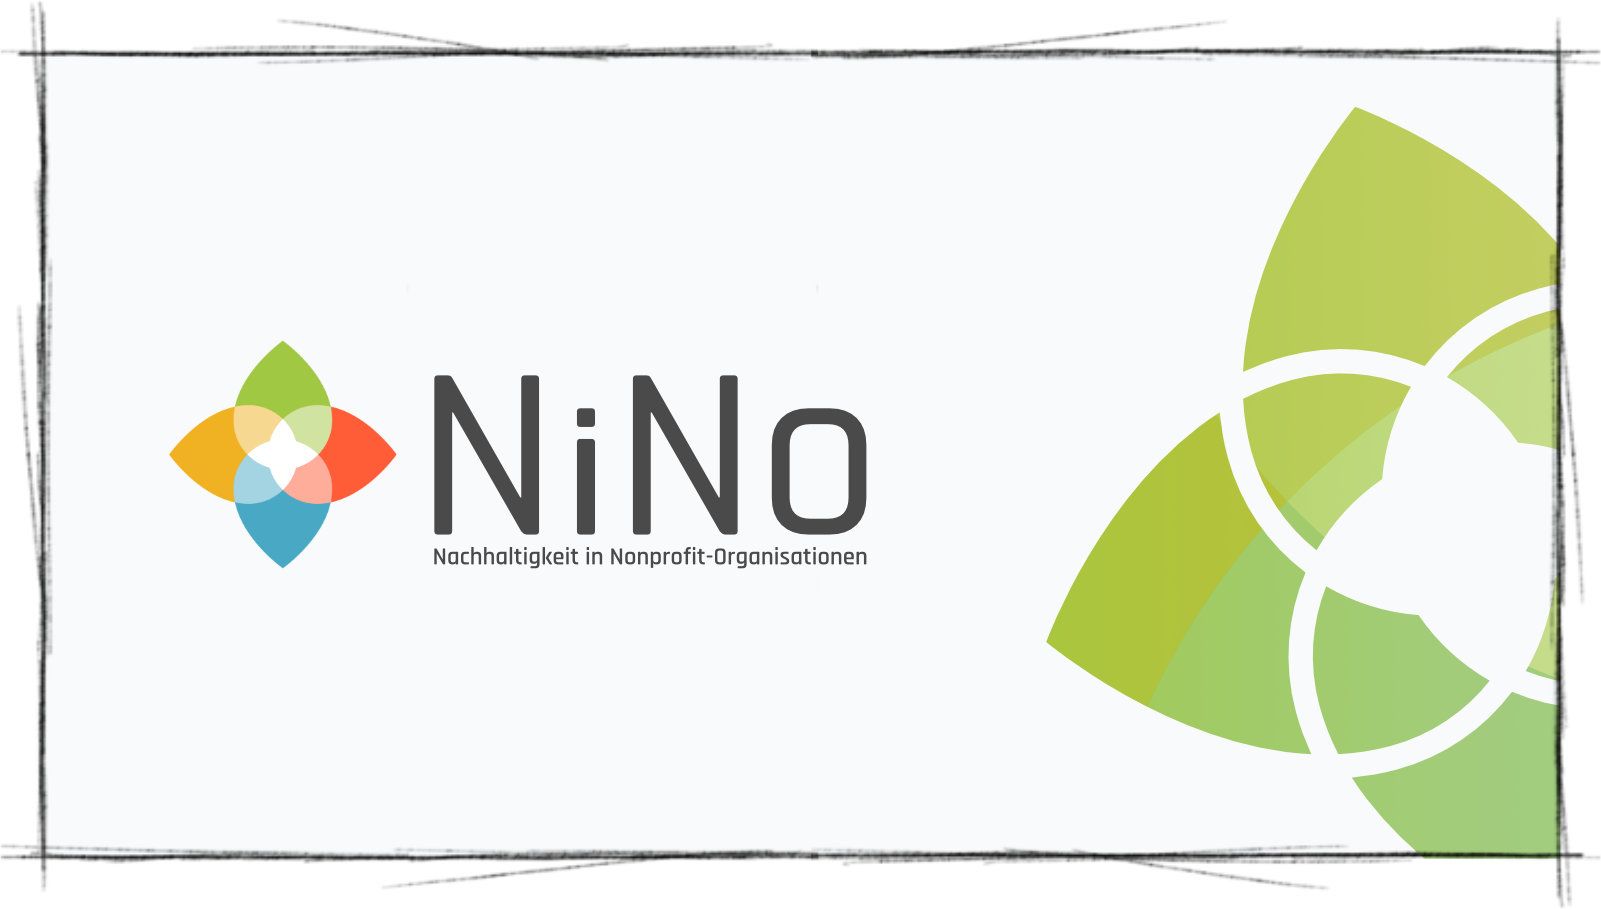 Das Titelbild der Corporate Design Projekt Vorstellung von NiNo Nachhaltigkeit in Non Profit Organisationen, mit dem Nino Logo mit Schriftzug links und einer Clanen Vektor Illustration des Logos in grün rechts davon zeigt